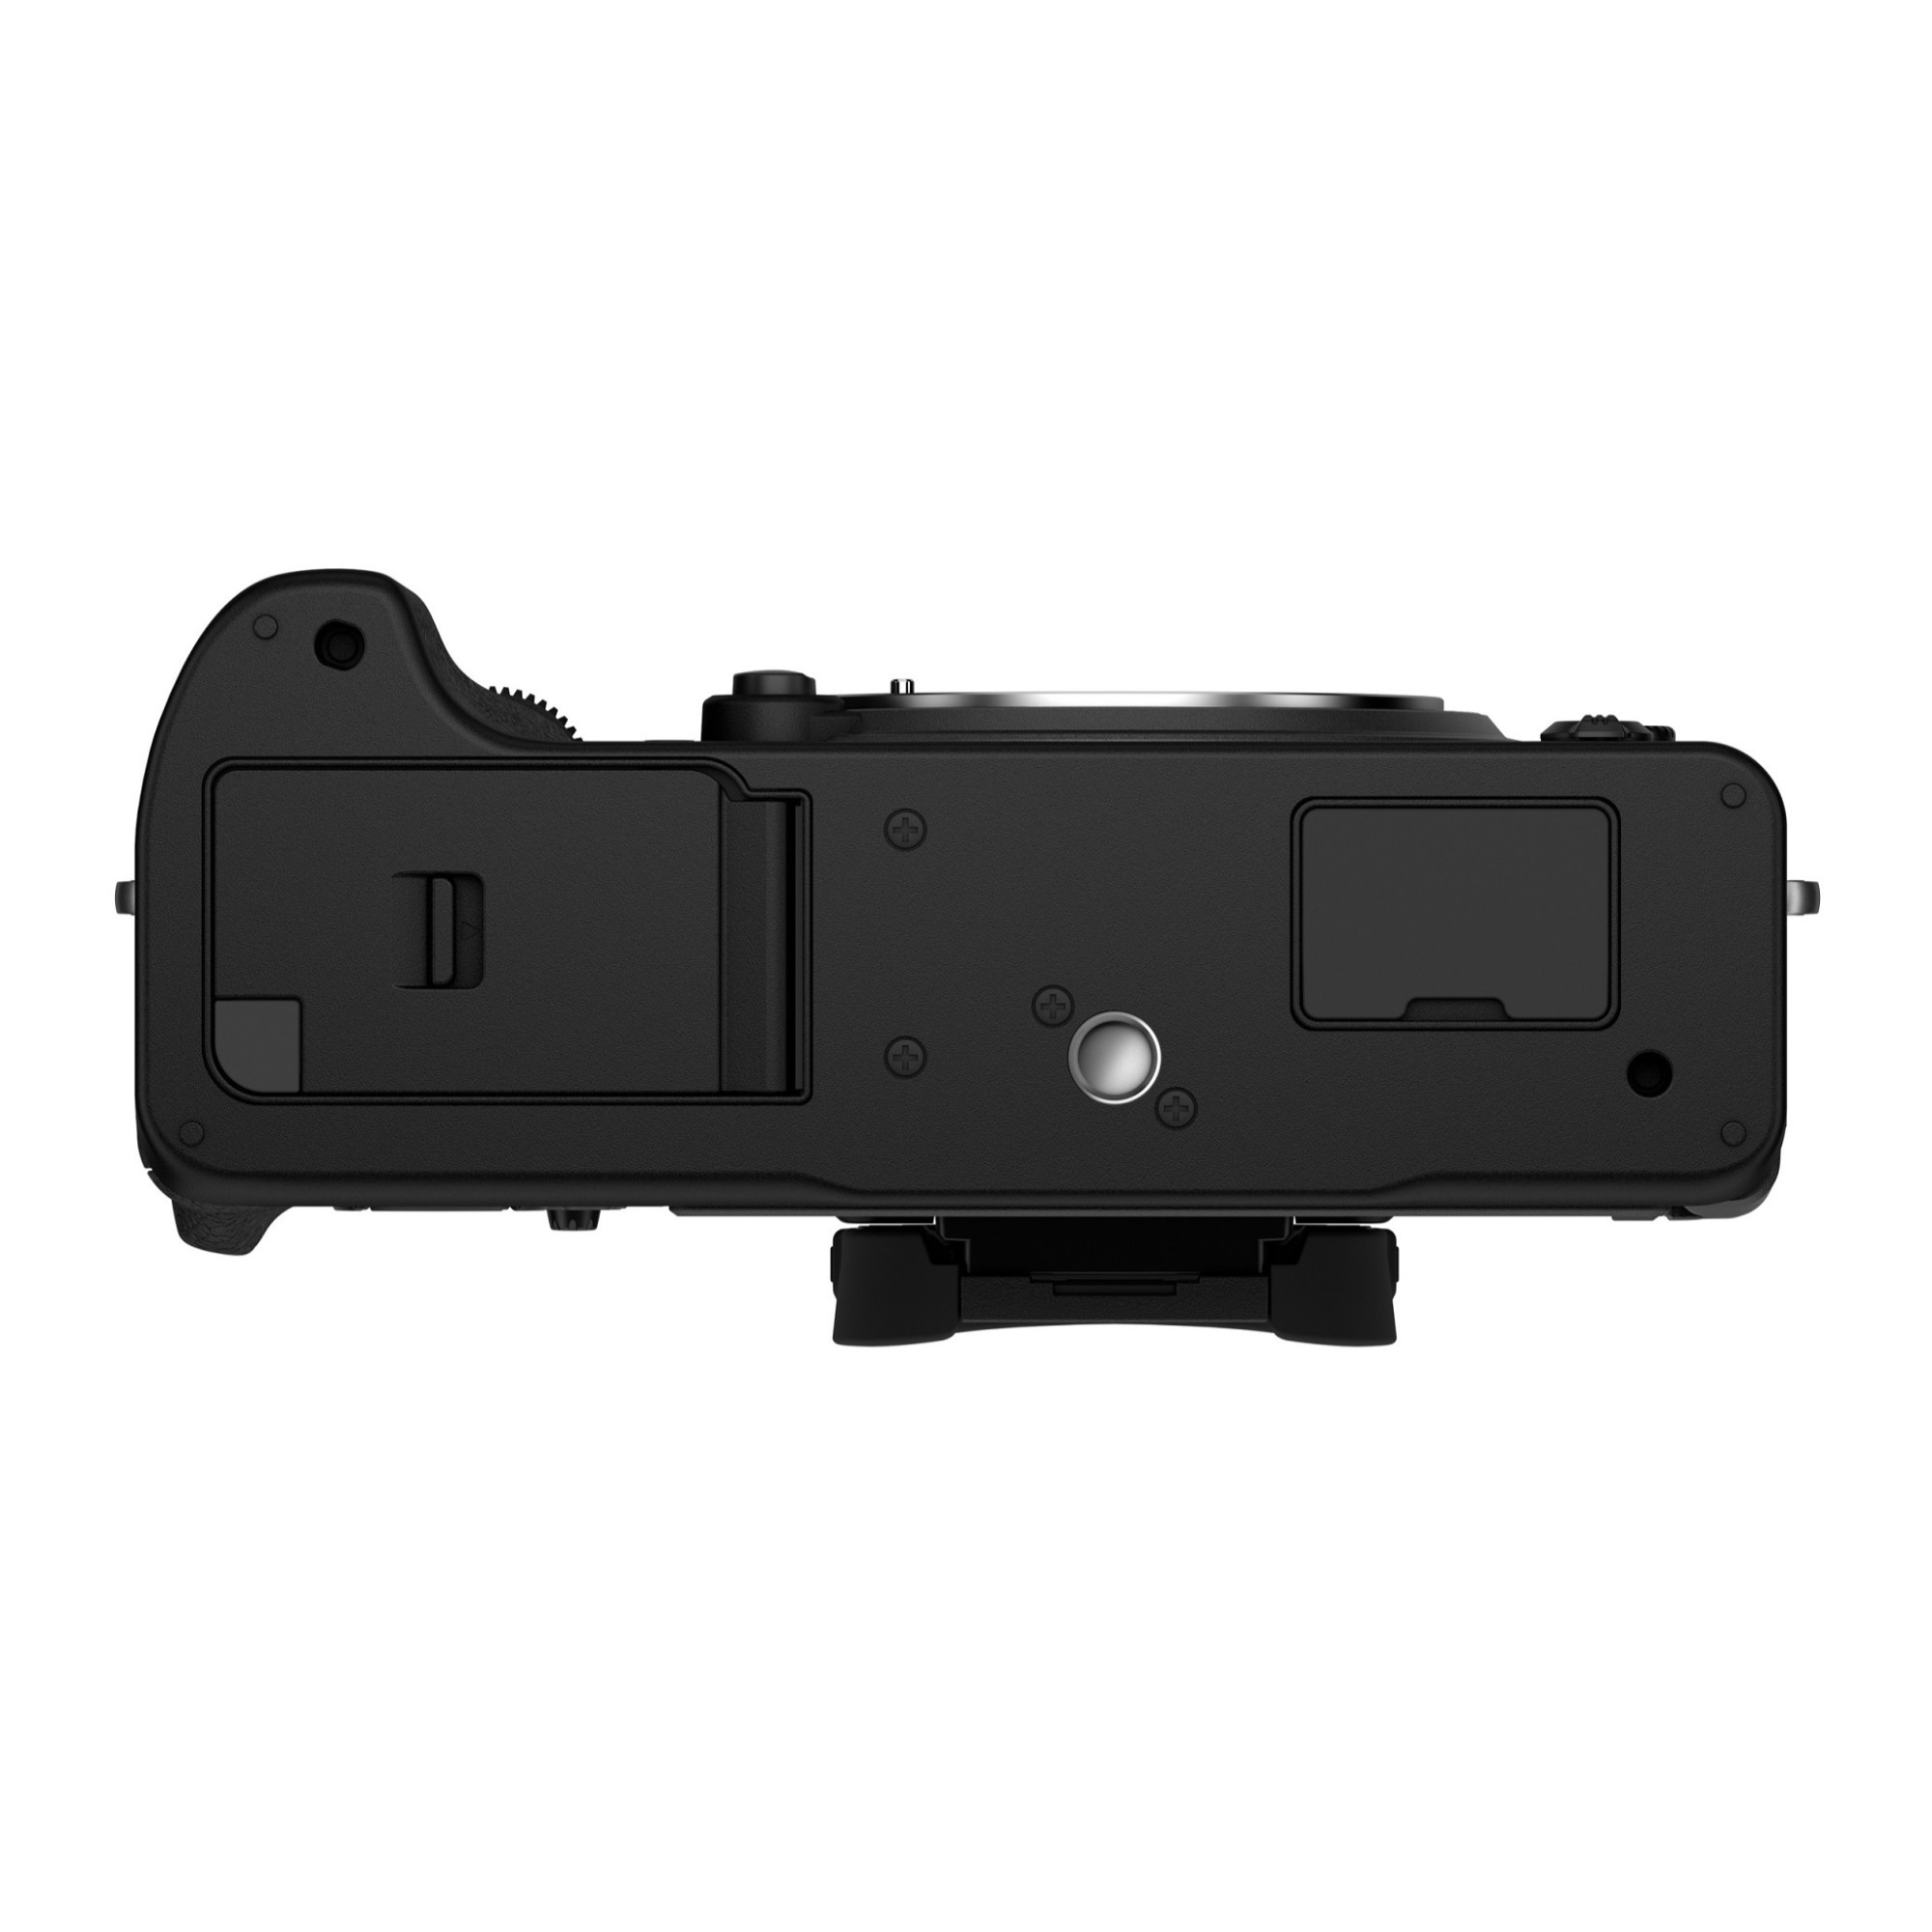 Fujifilm X-T4 + 18-55mm F2.8-4.0 OIS Kit (Musta)